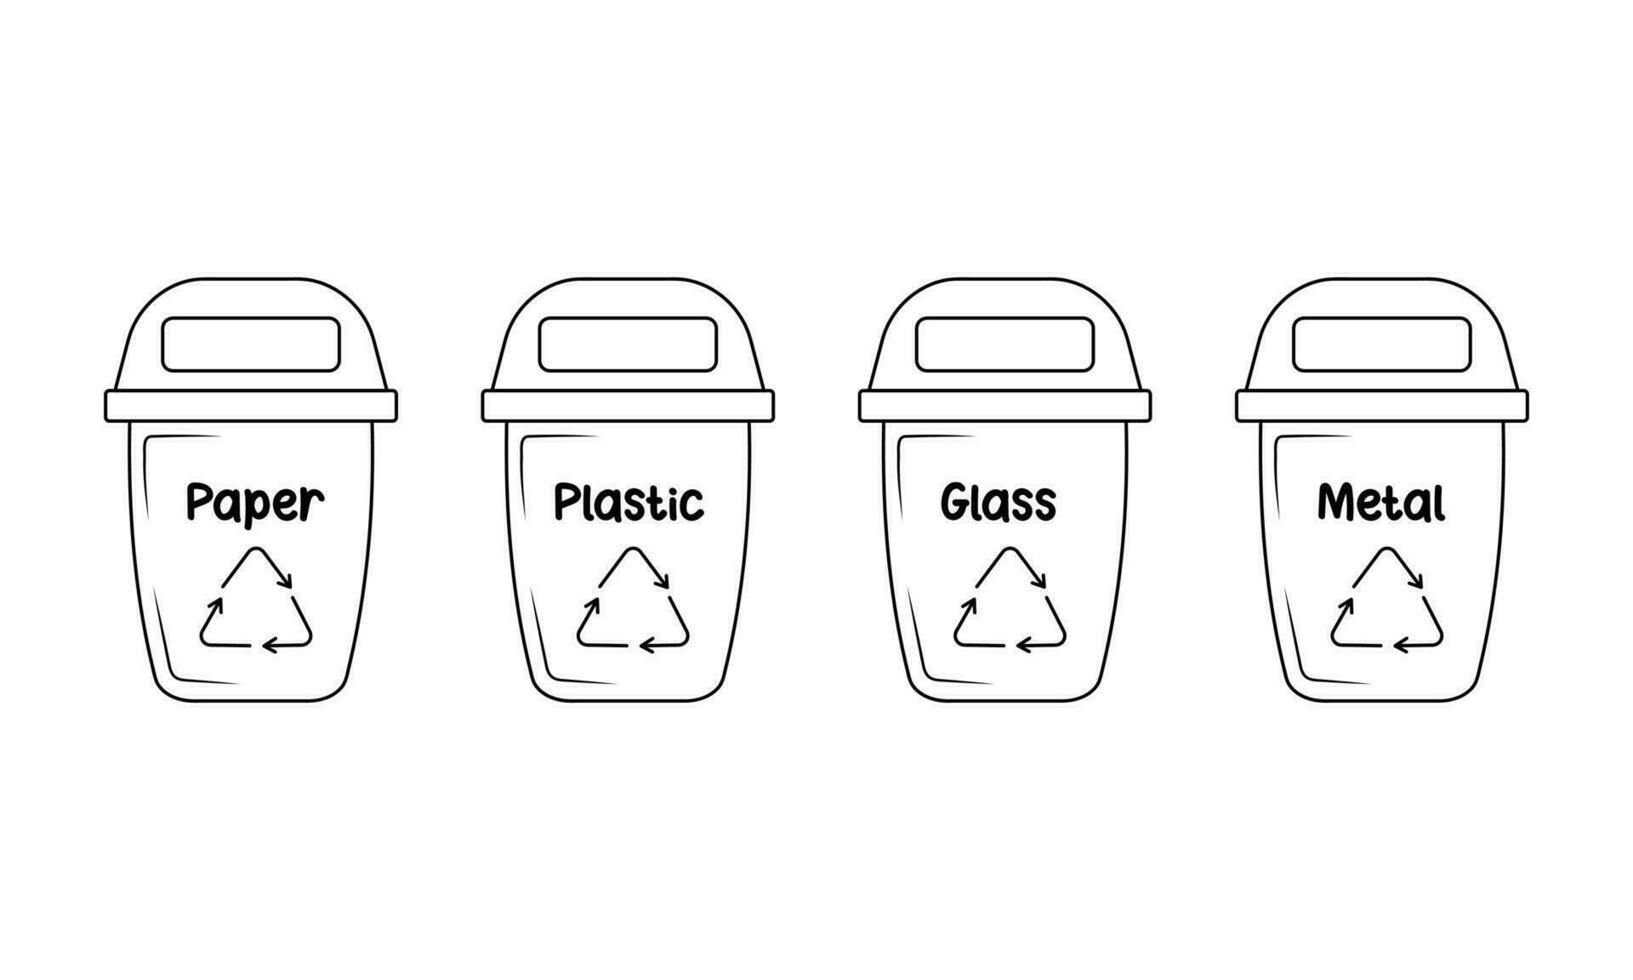 basura latas con ordenado basura. contenedores para papel, el plastico, vaso y metal en garabatear estilo. cero desperdiciar. residuos reciclaje. vector